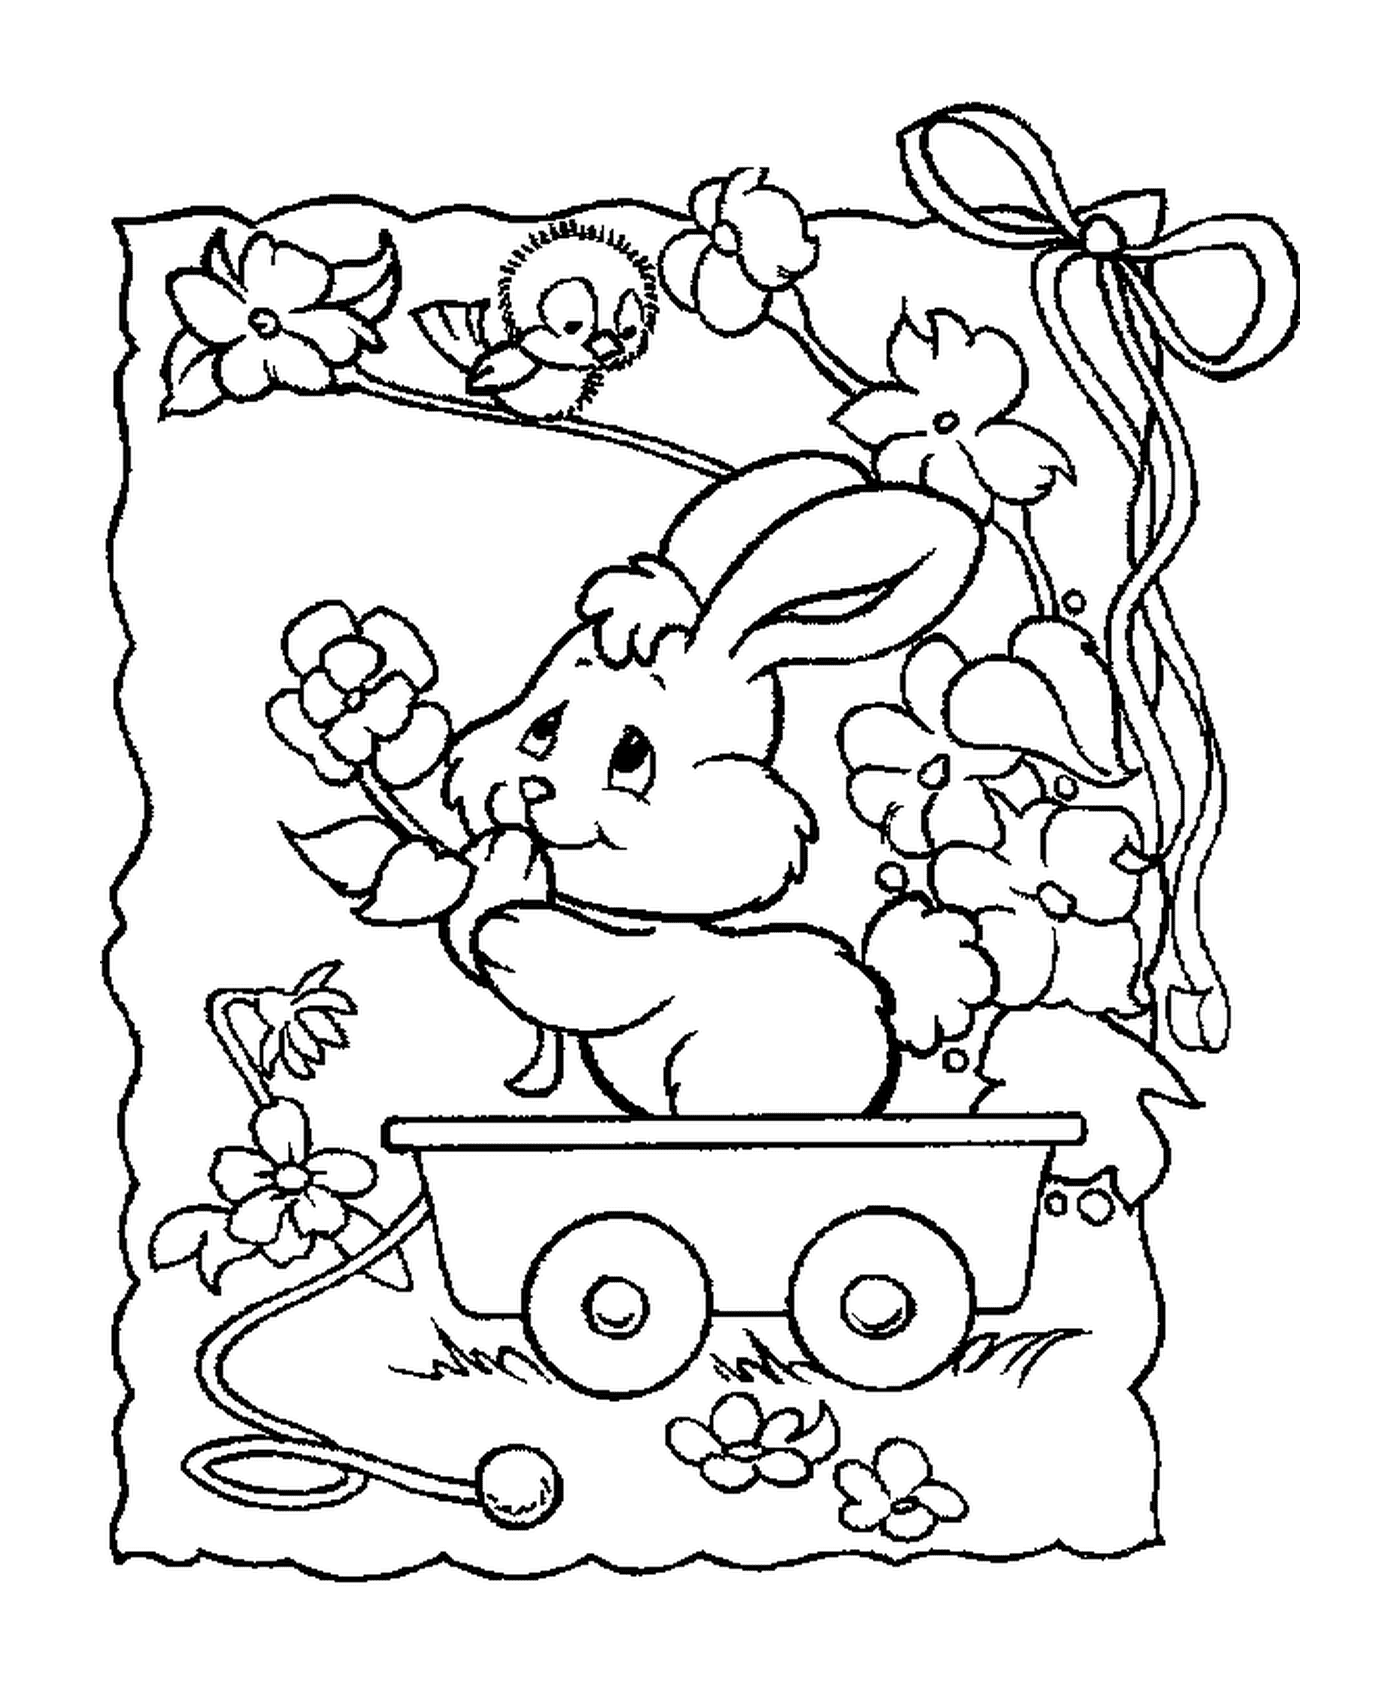  Um coelho sentado em um vagão 